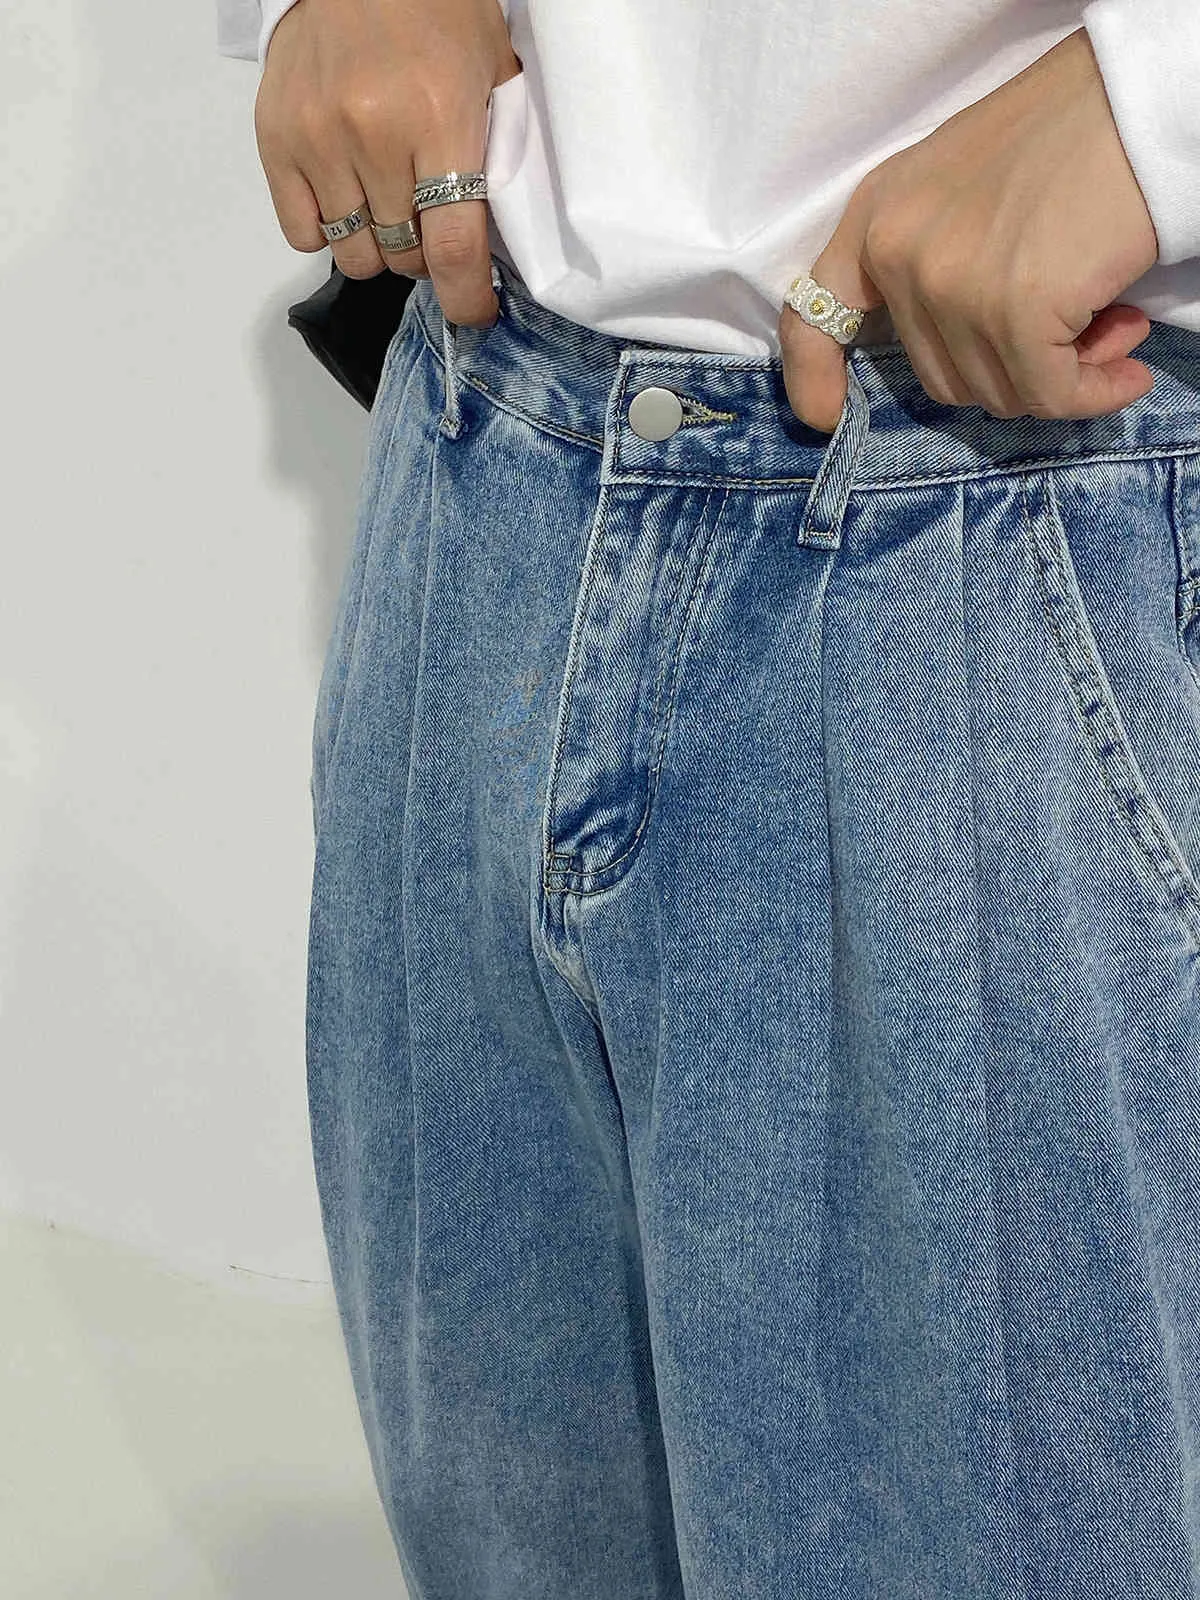 IEFB / Мужская одежда Корейский стиль Широкие брюки ноги модные высокие талии для похудения папа свободные прямые джинсы джинсы свободные Y4163 210524